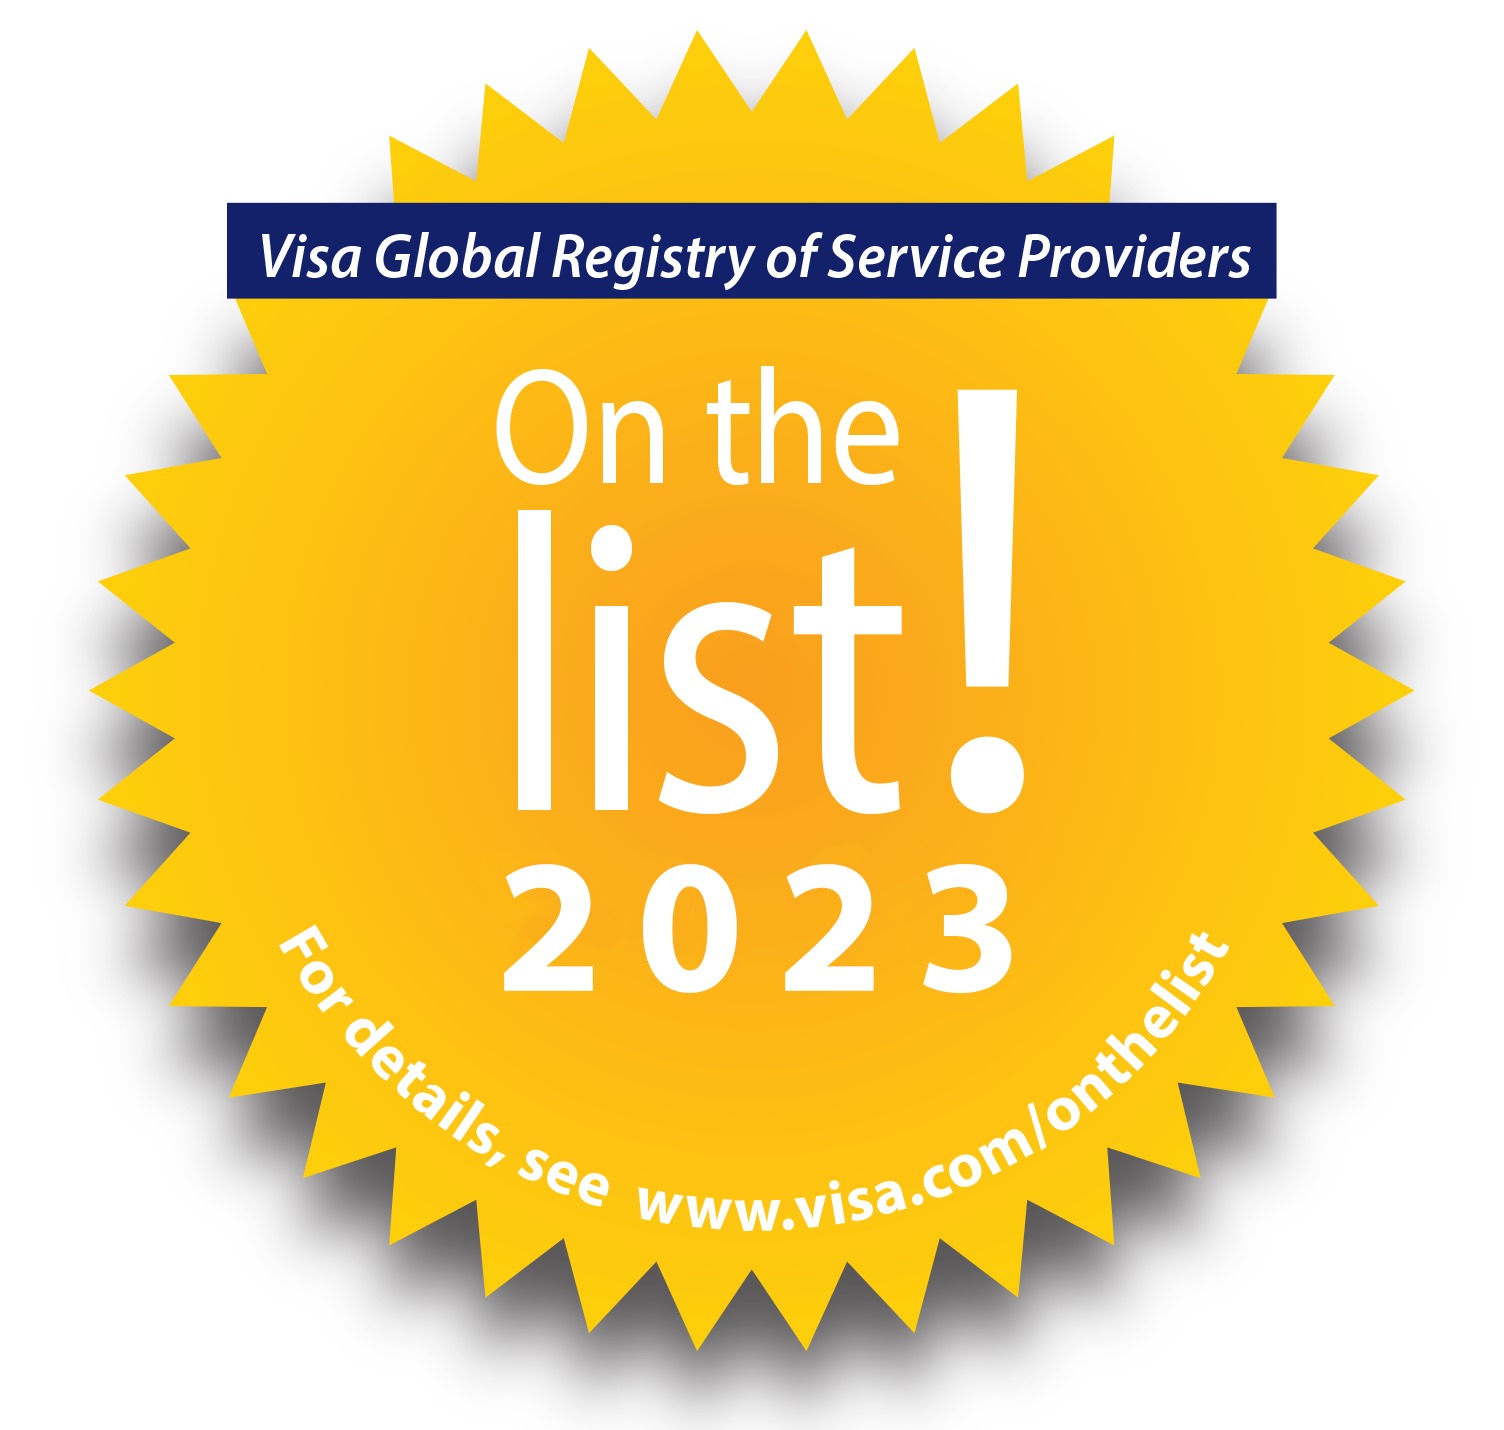 Visa Global Registry of Service Providers